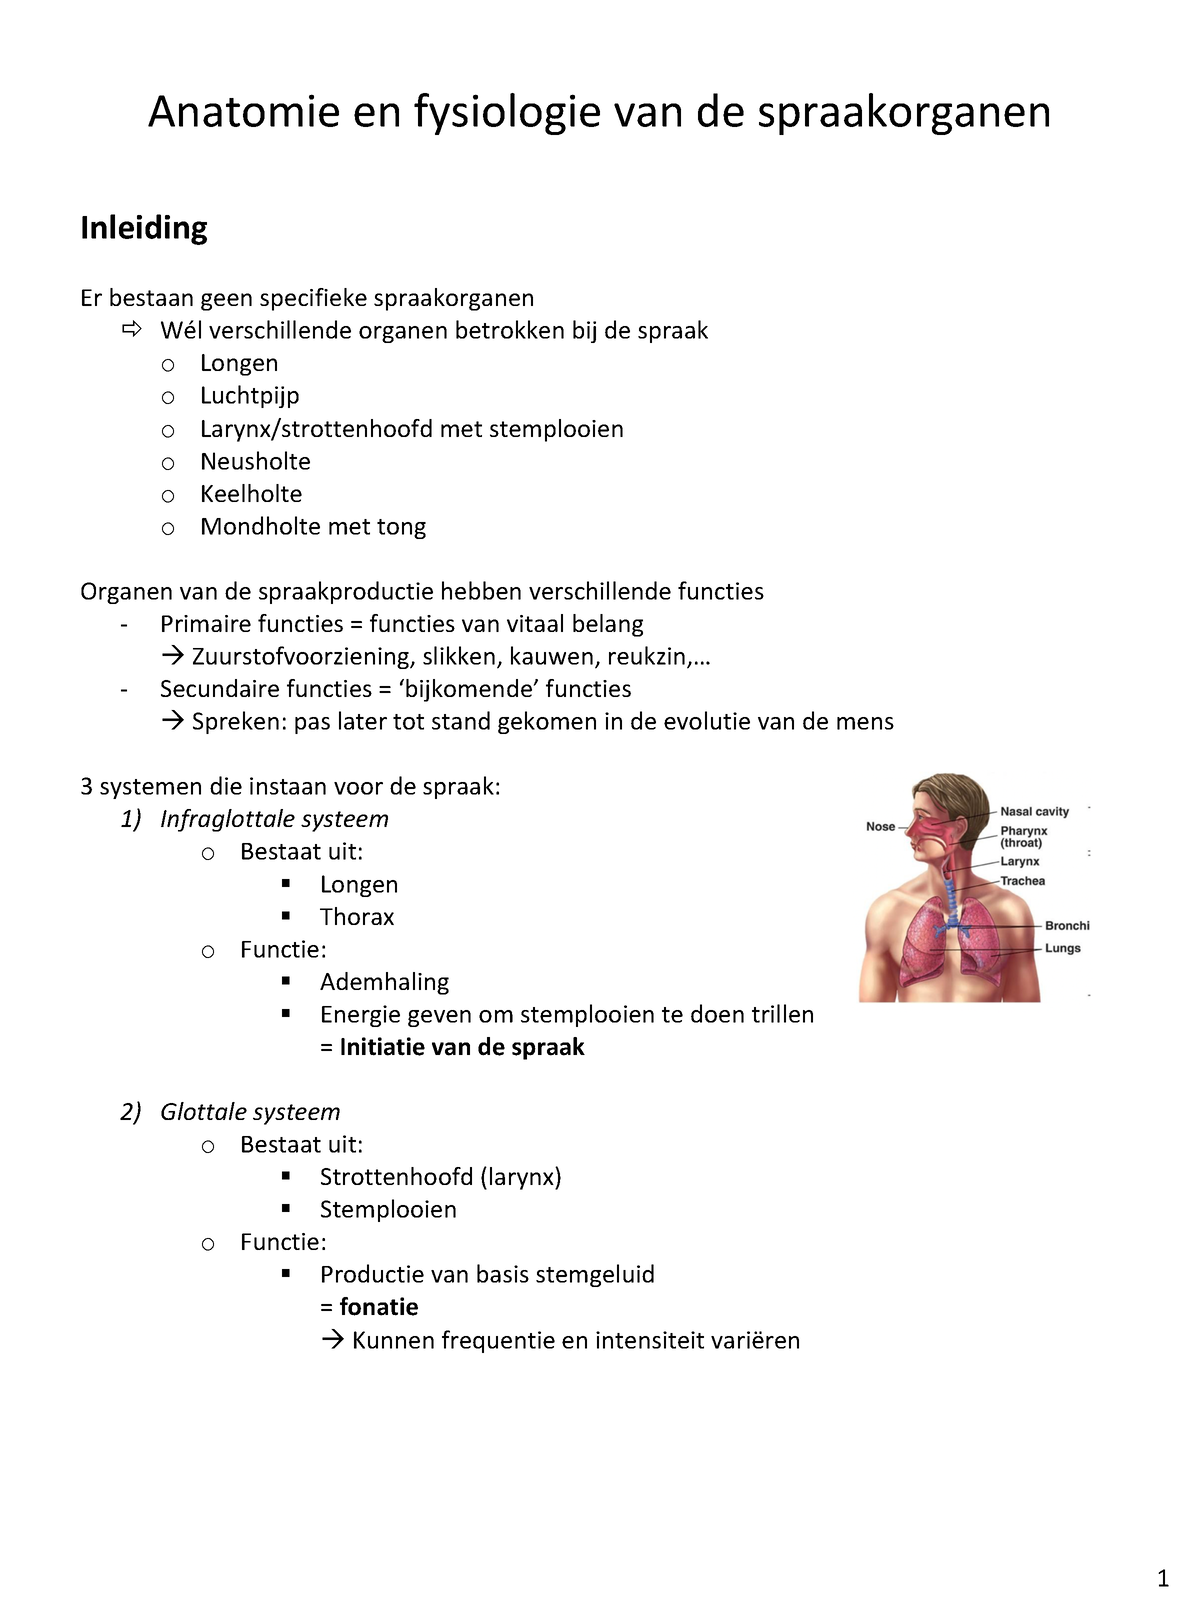 Deel 1 Anatomie Spraak Sv Anatomie En Fysiologie Van De Spraakorganen